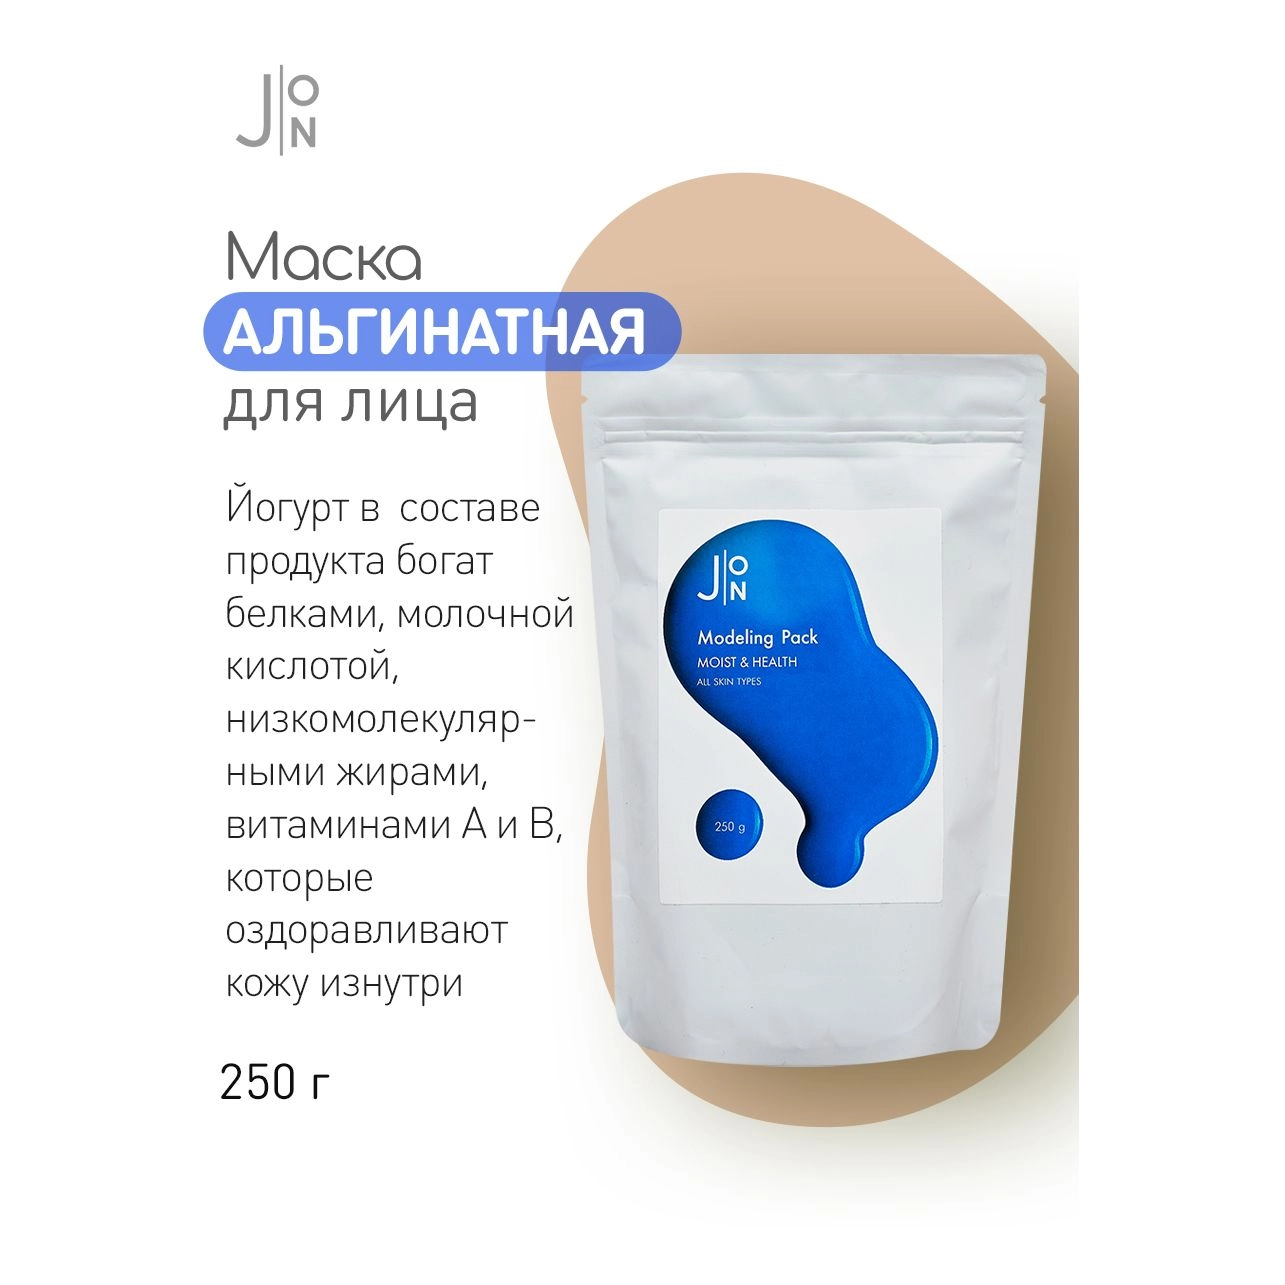 Альгинатная Маска для лица увлажнение и здоровье - J:ON Moist & Health Modeling Pack, 250 г - фото N4